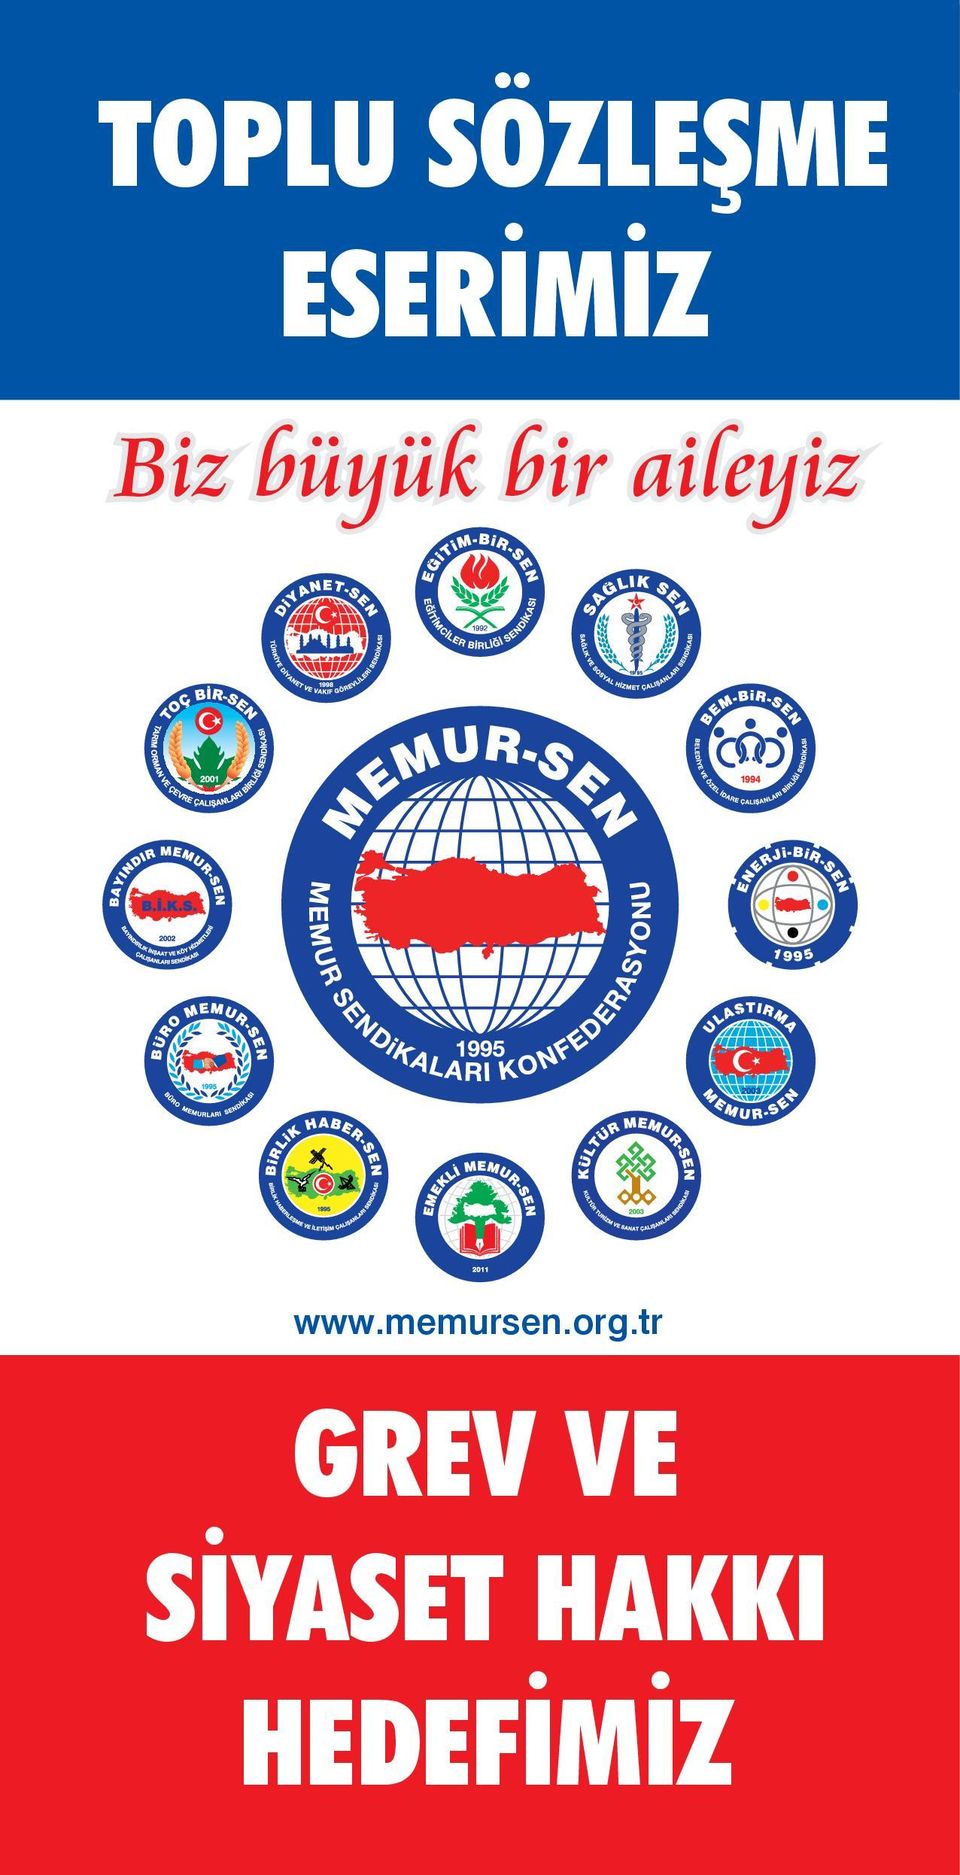 www.memursen.org.